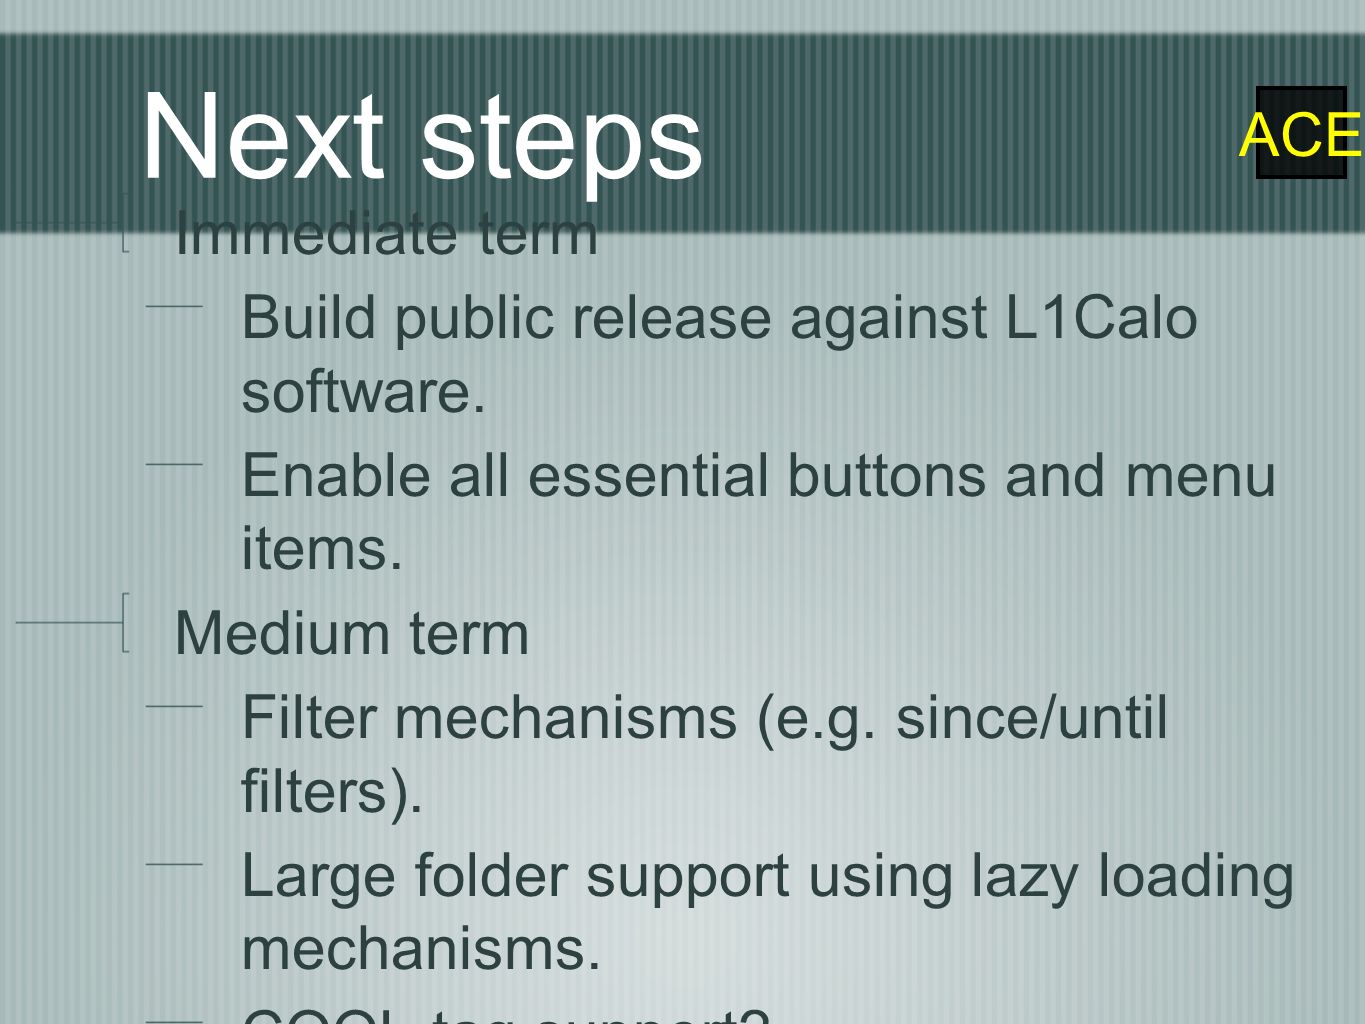 ACE Next steps Immediate term Build public release against L1Calo software.